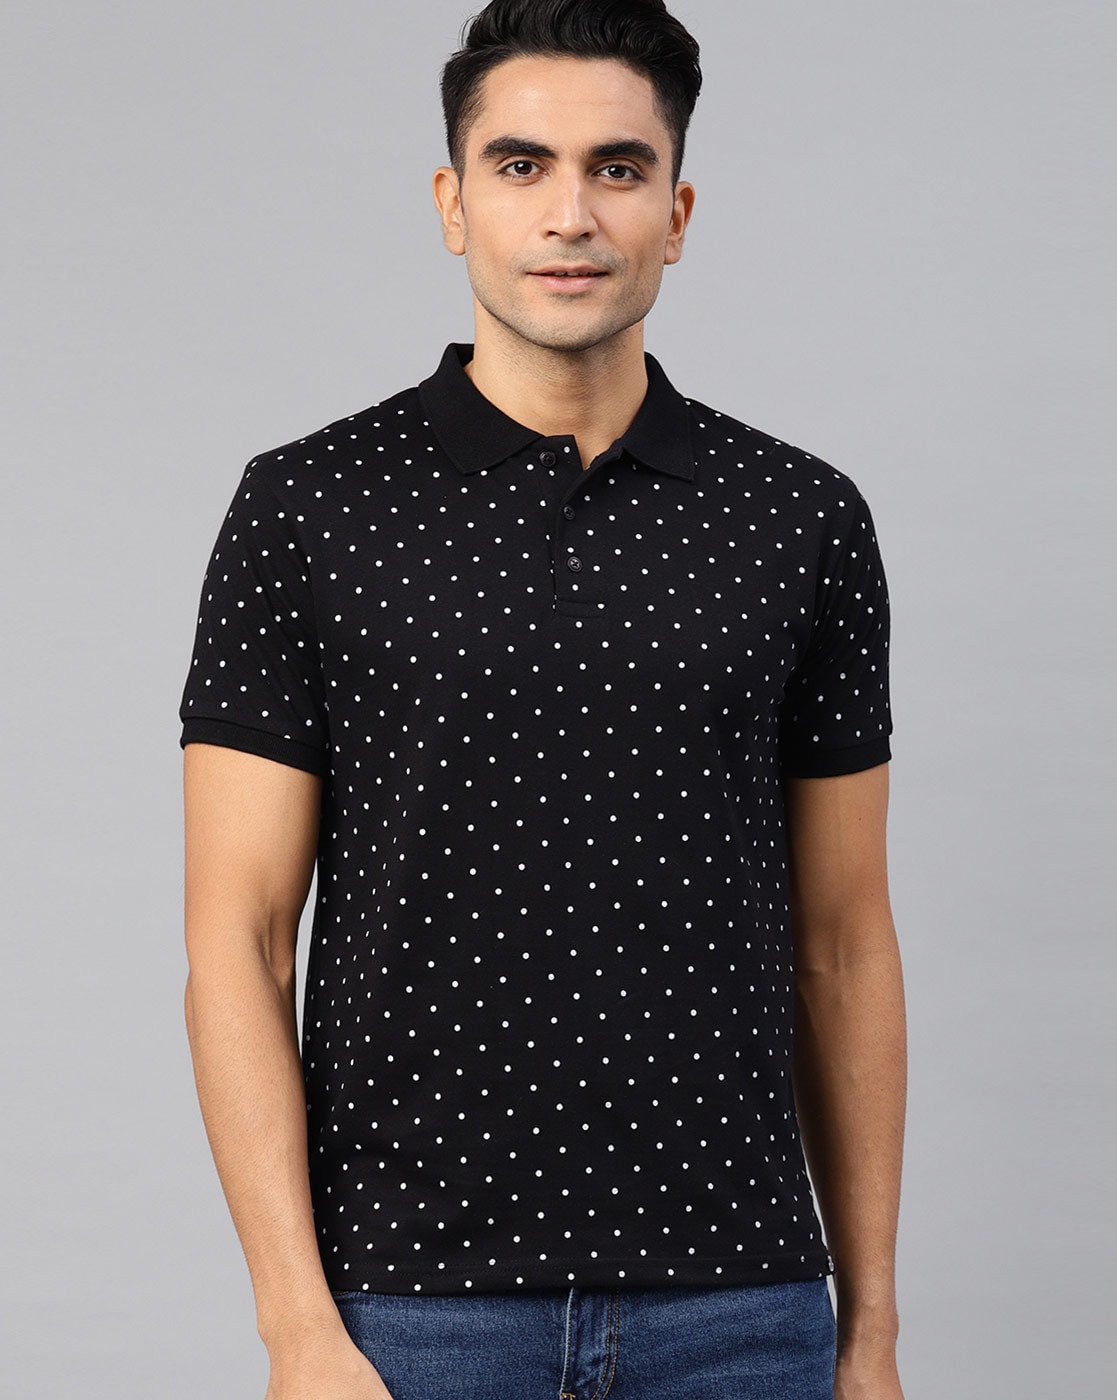 Buy Black Tshirts for Men Online | Ajio.com